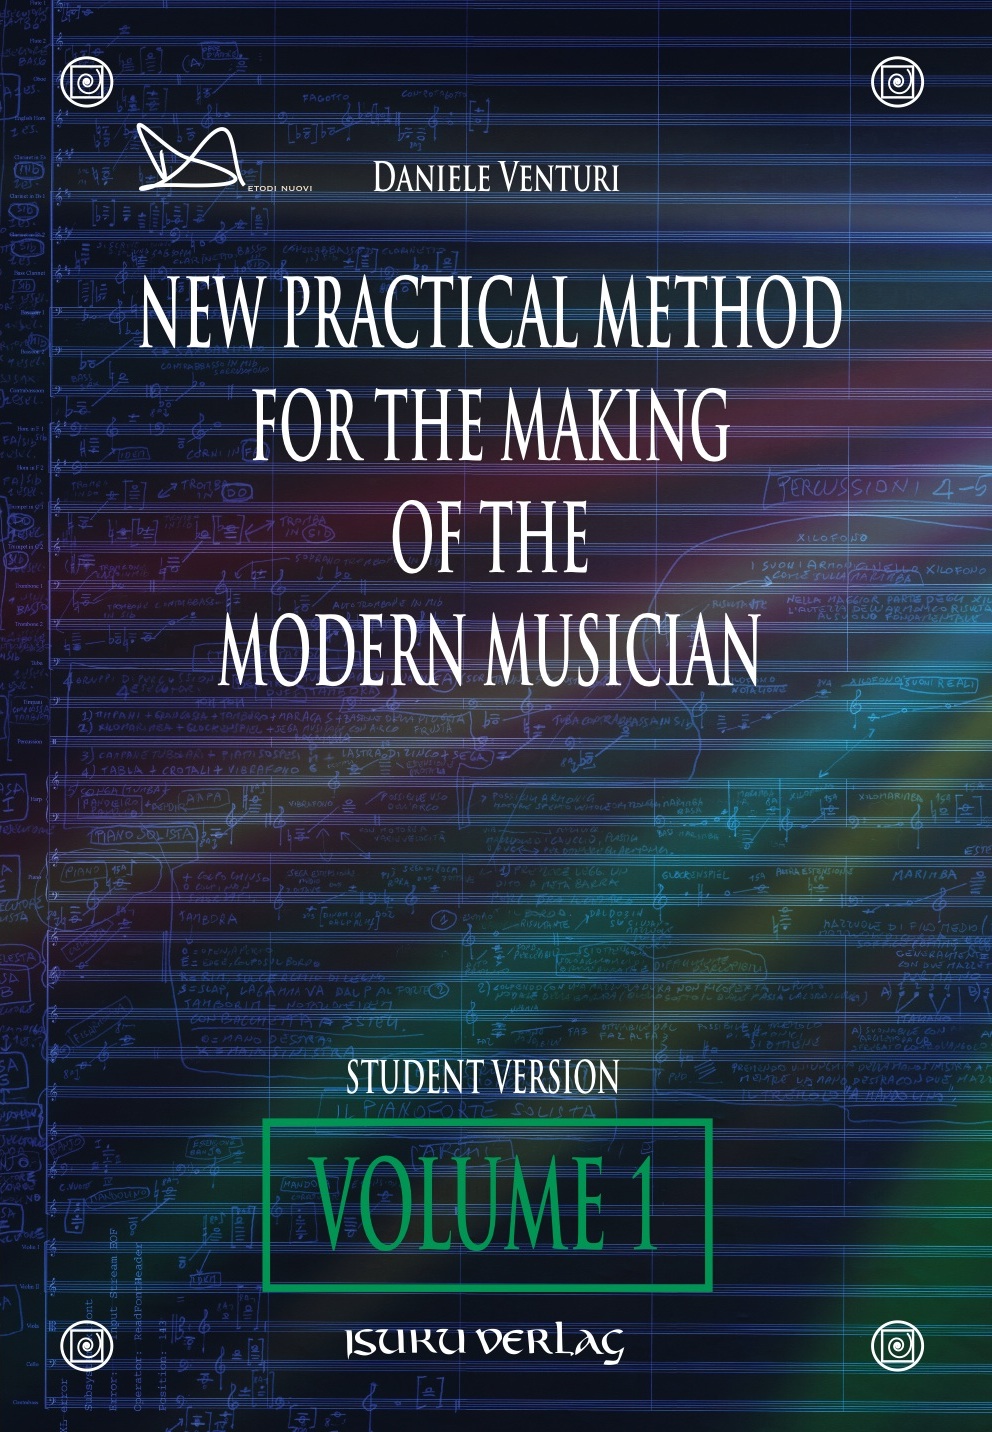 Nuovo metodo pratico per la formazione del musicista moderno